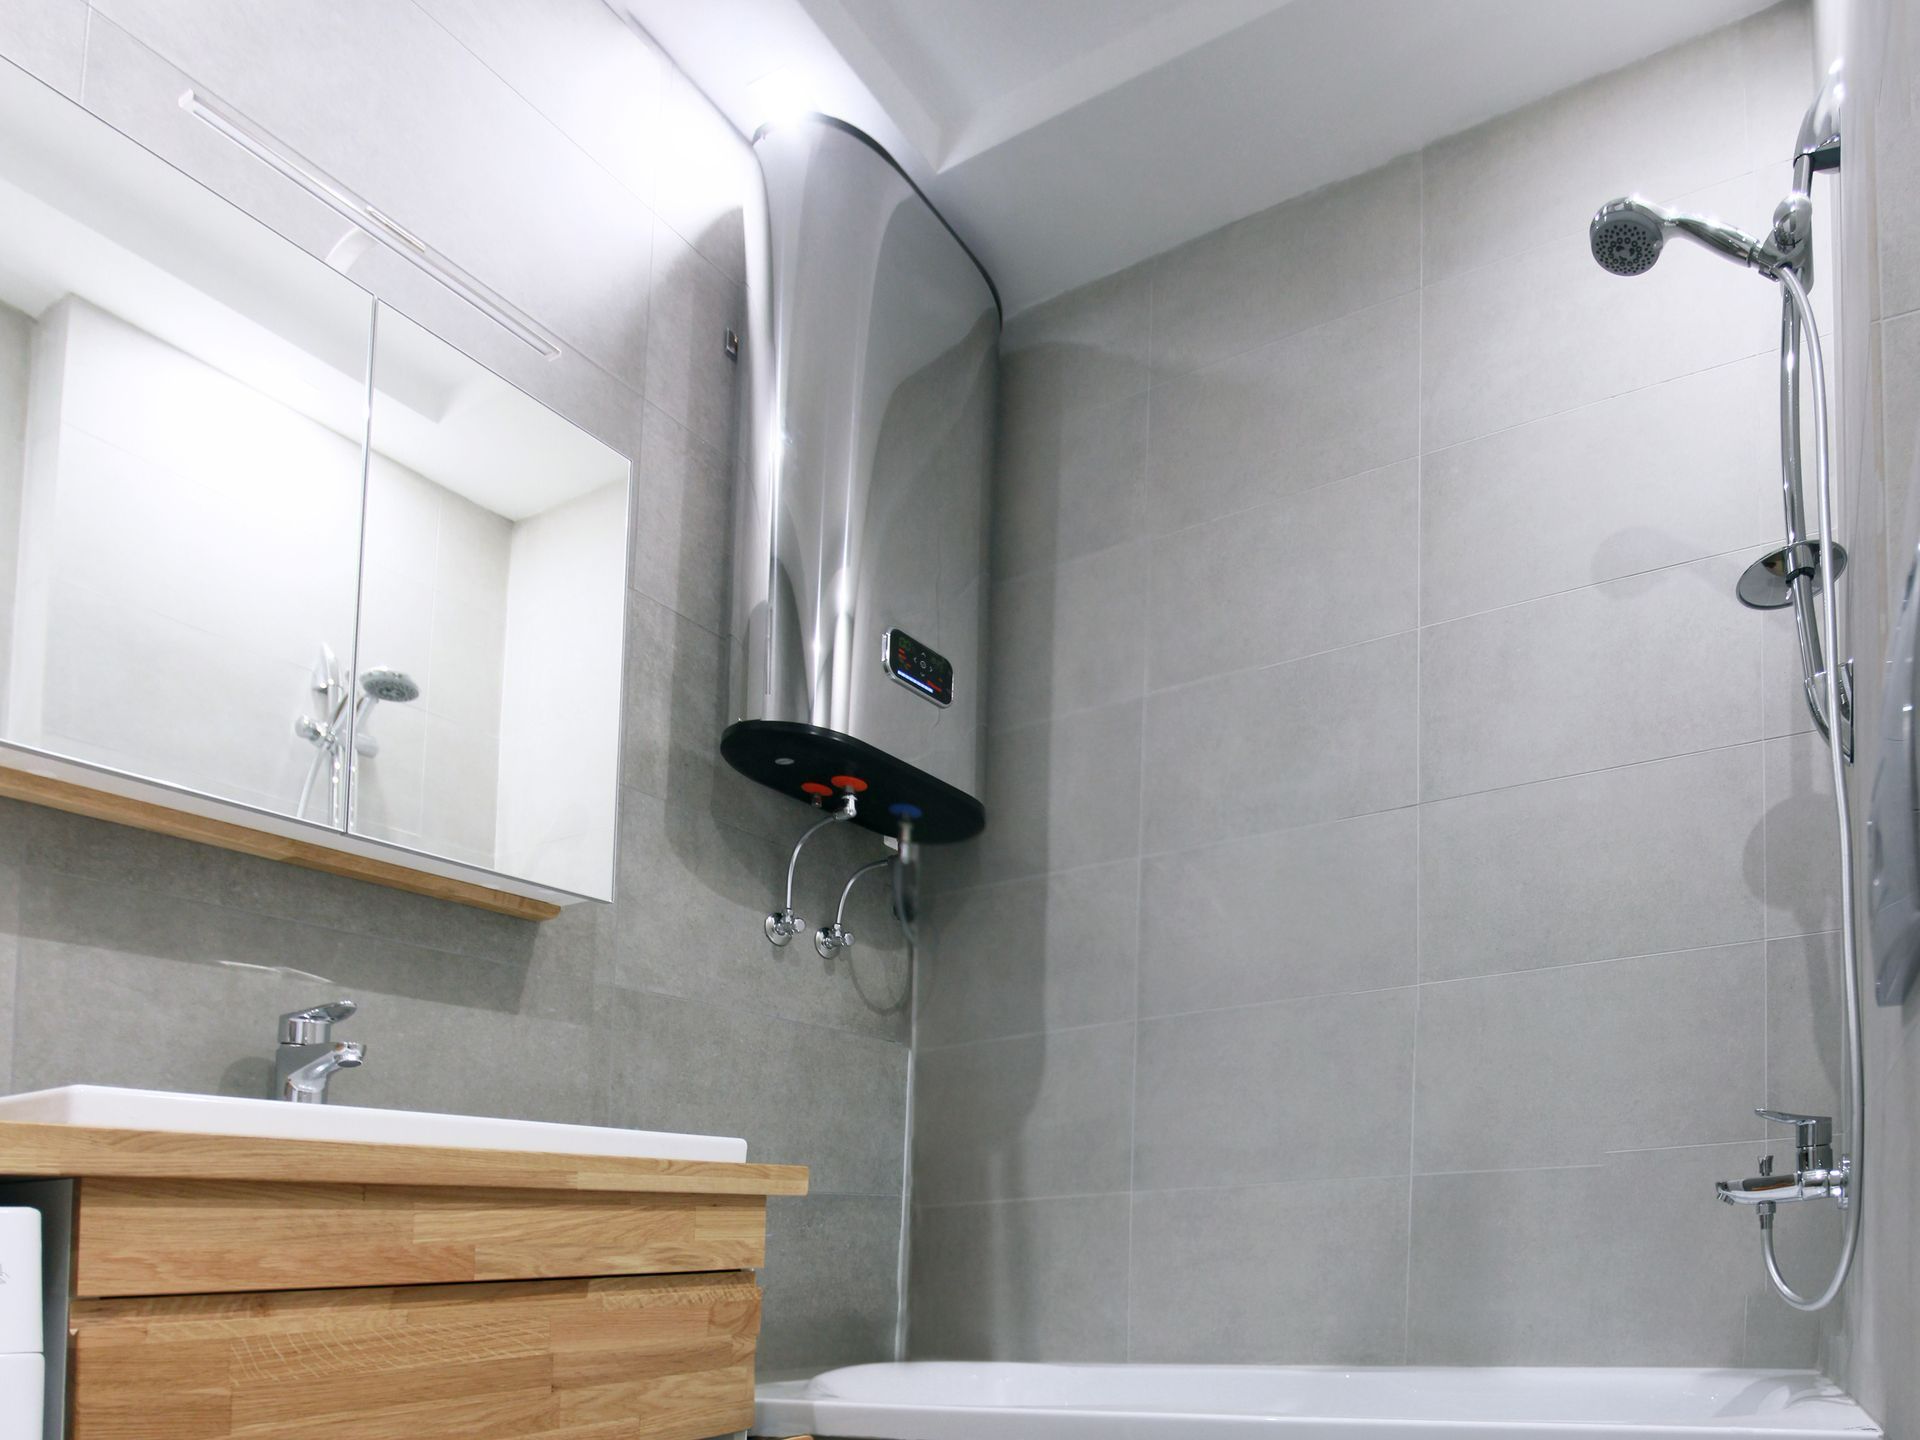 Chauffe-eau gris salle de bains